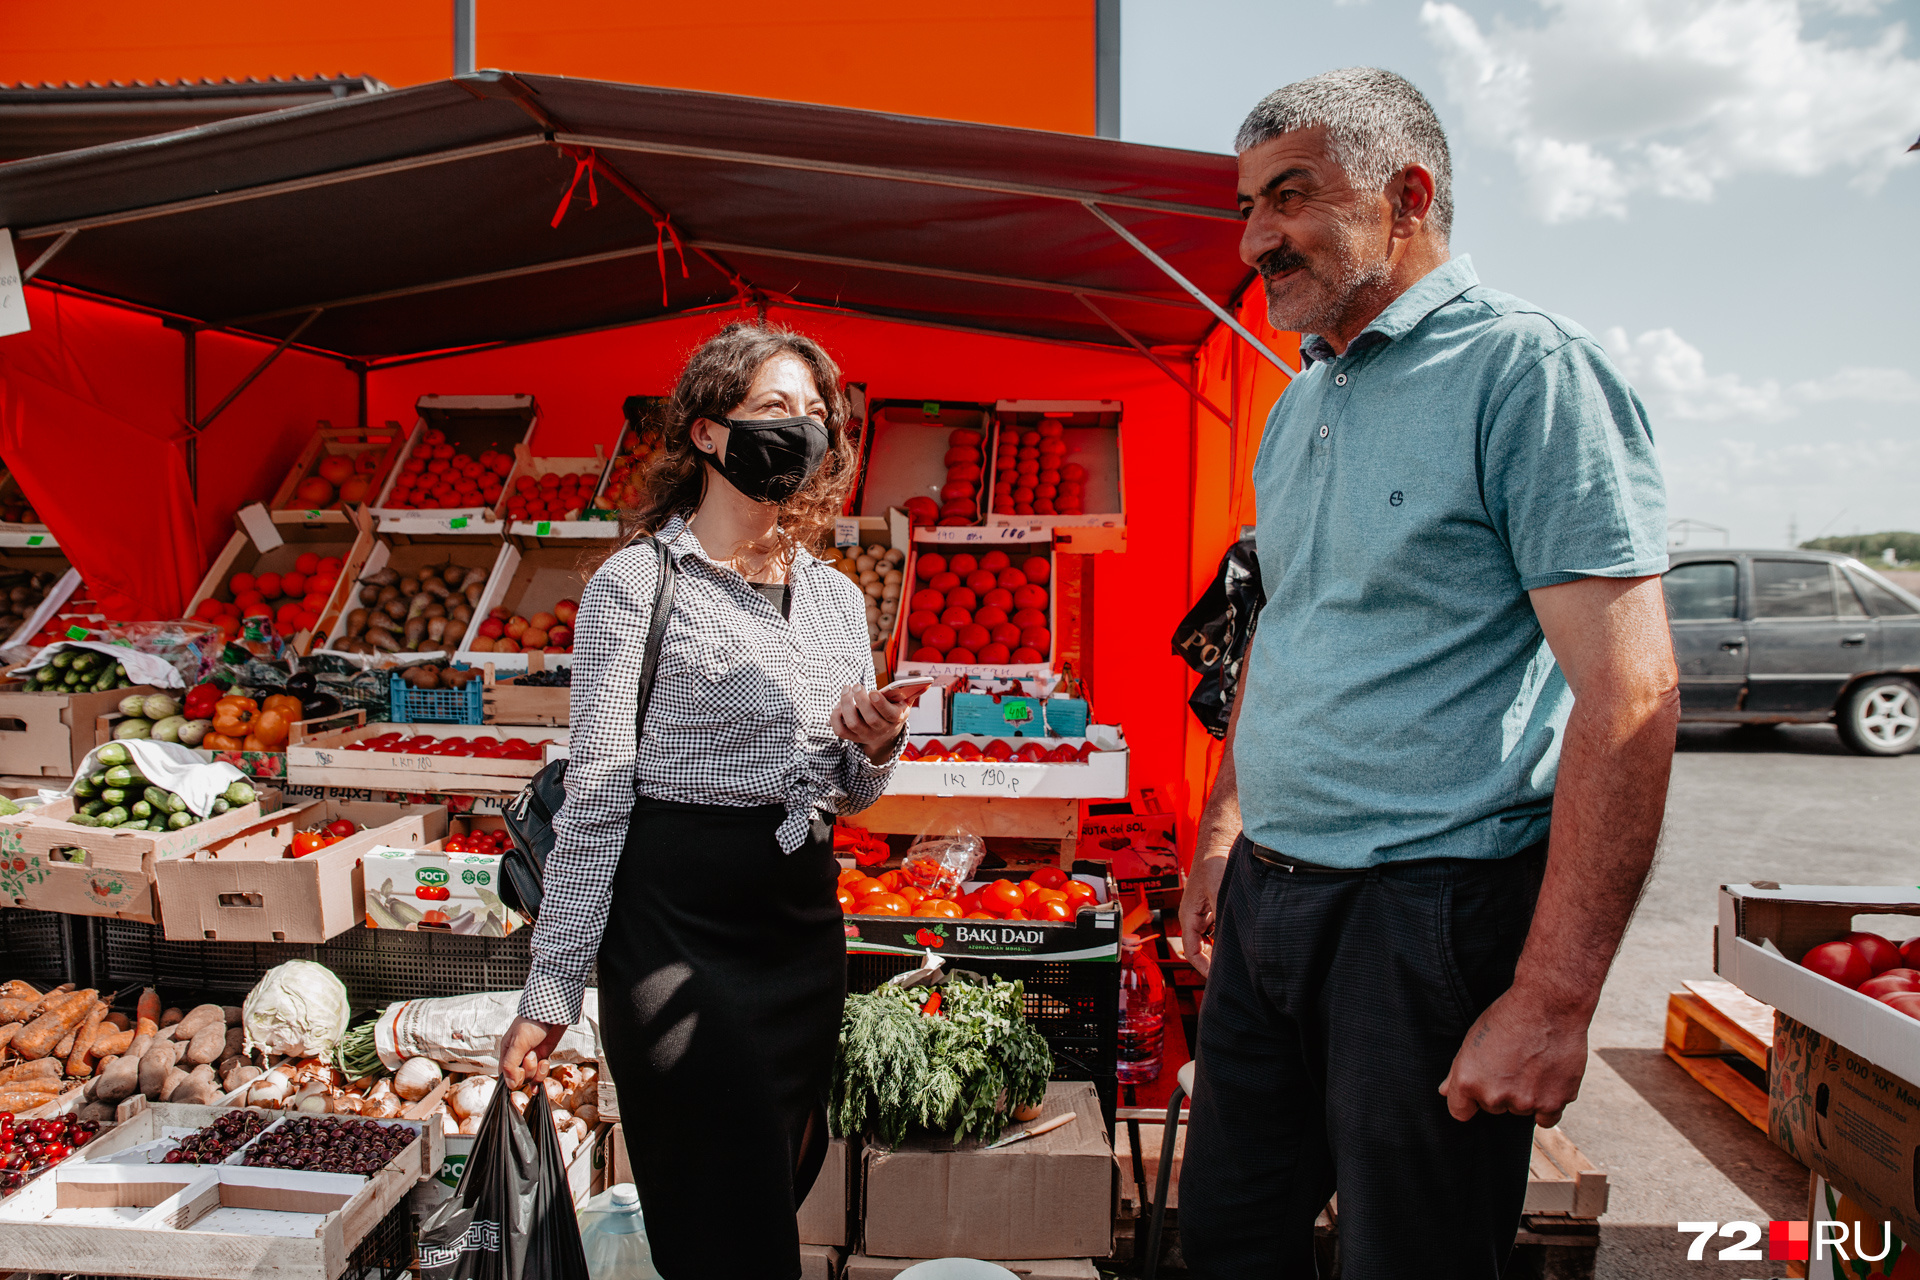 Знакомьтесь, рядом с нашей Машей стоит Тэлман Алиев. Он говорит, что в продаже у них только вкусные ягоды, и даже угостил наших девчат спелой черешней из Узбекистана. За кило этой ягоды мужчина просит 450 рублей